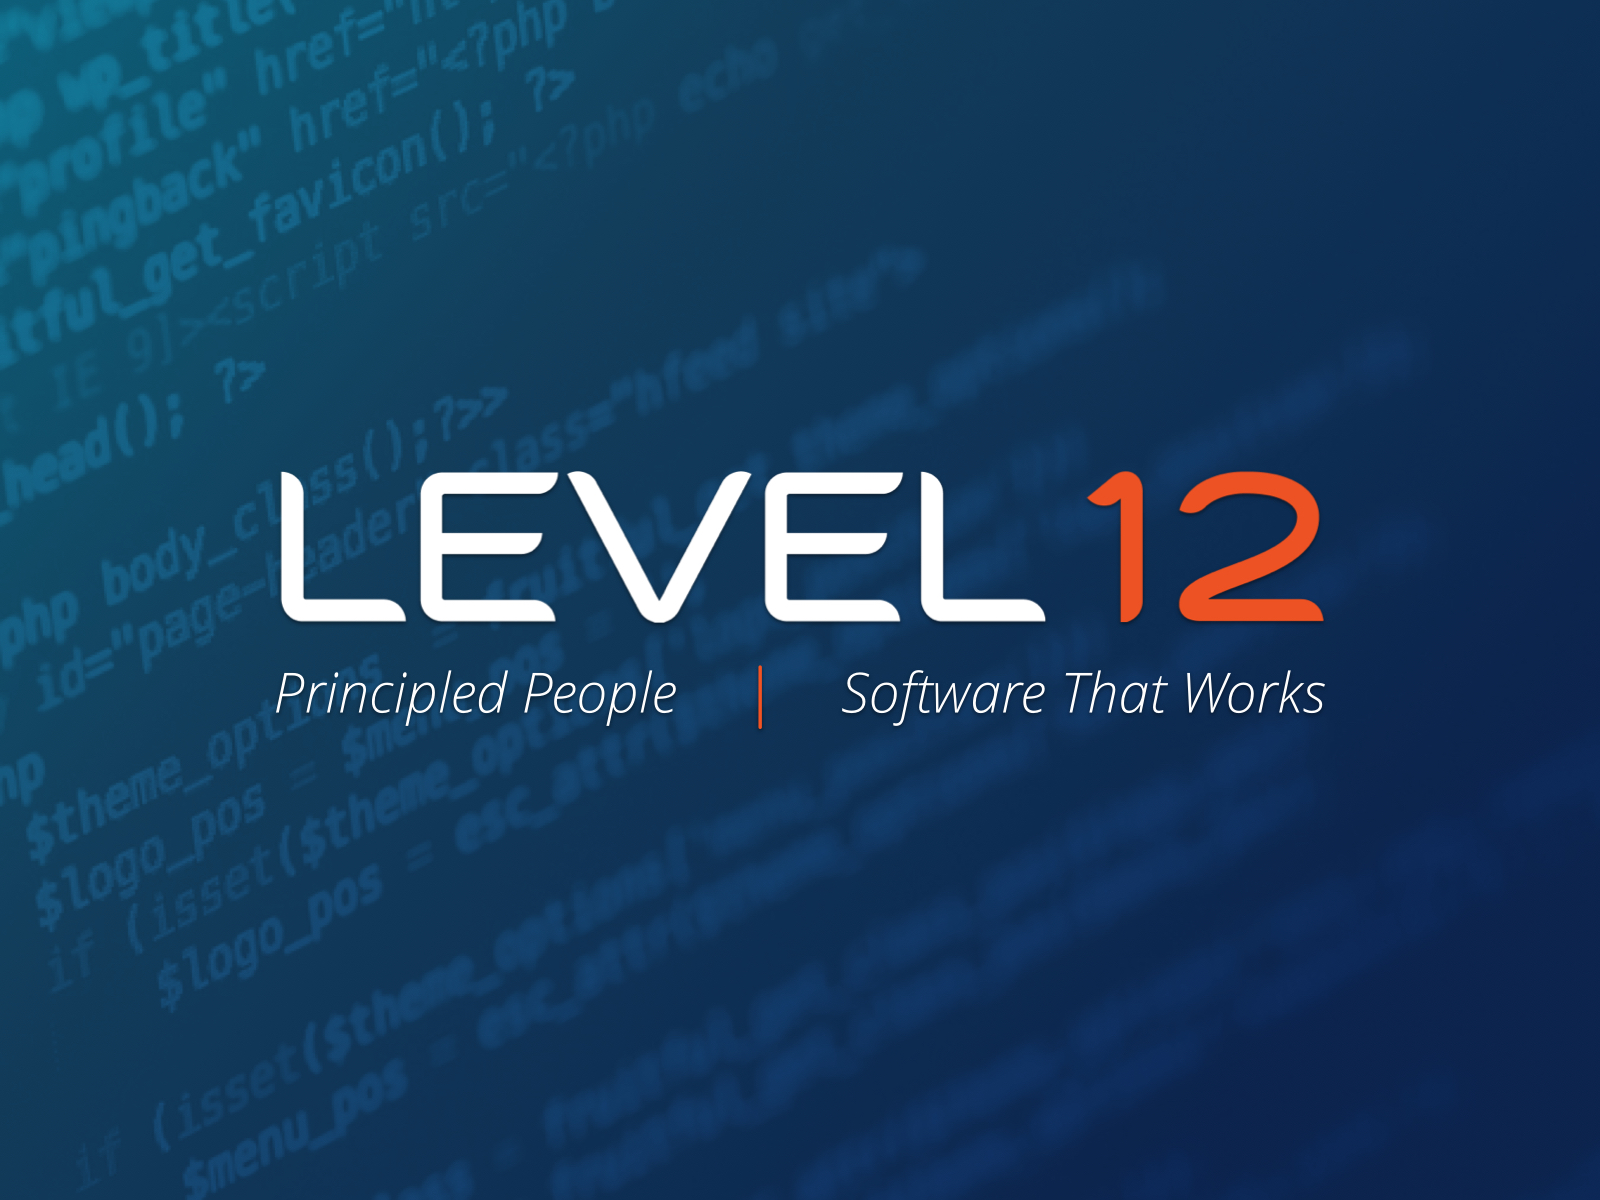 Level 12 Image 